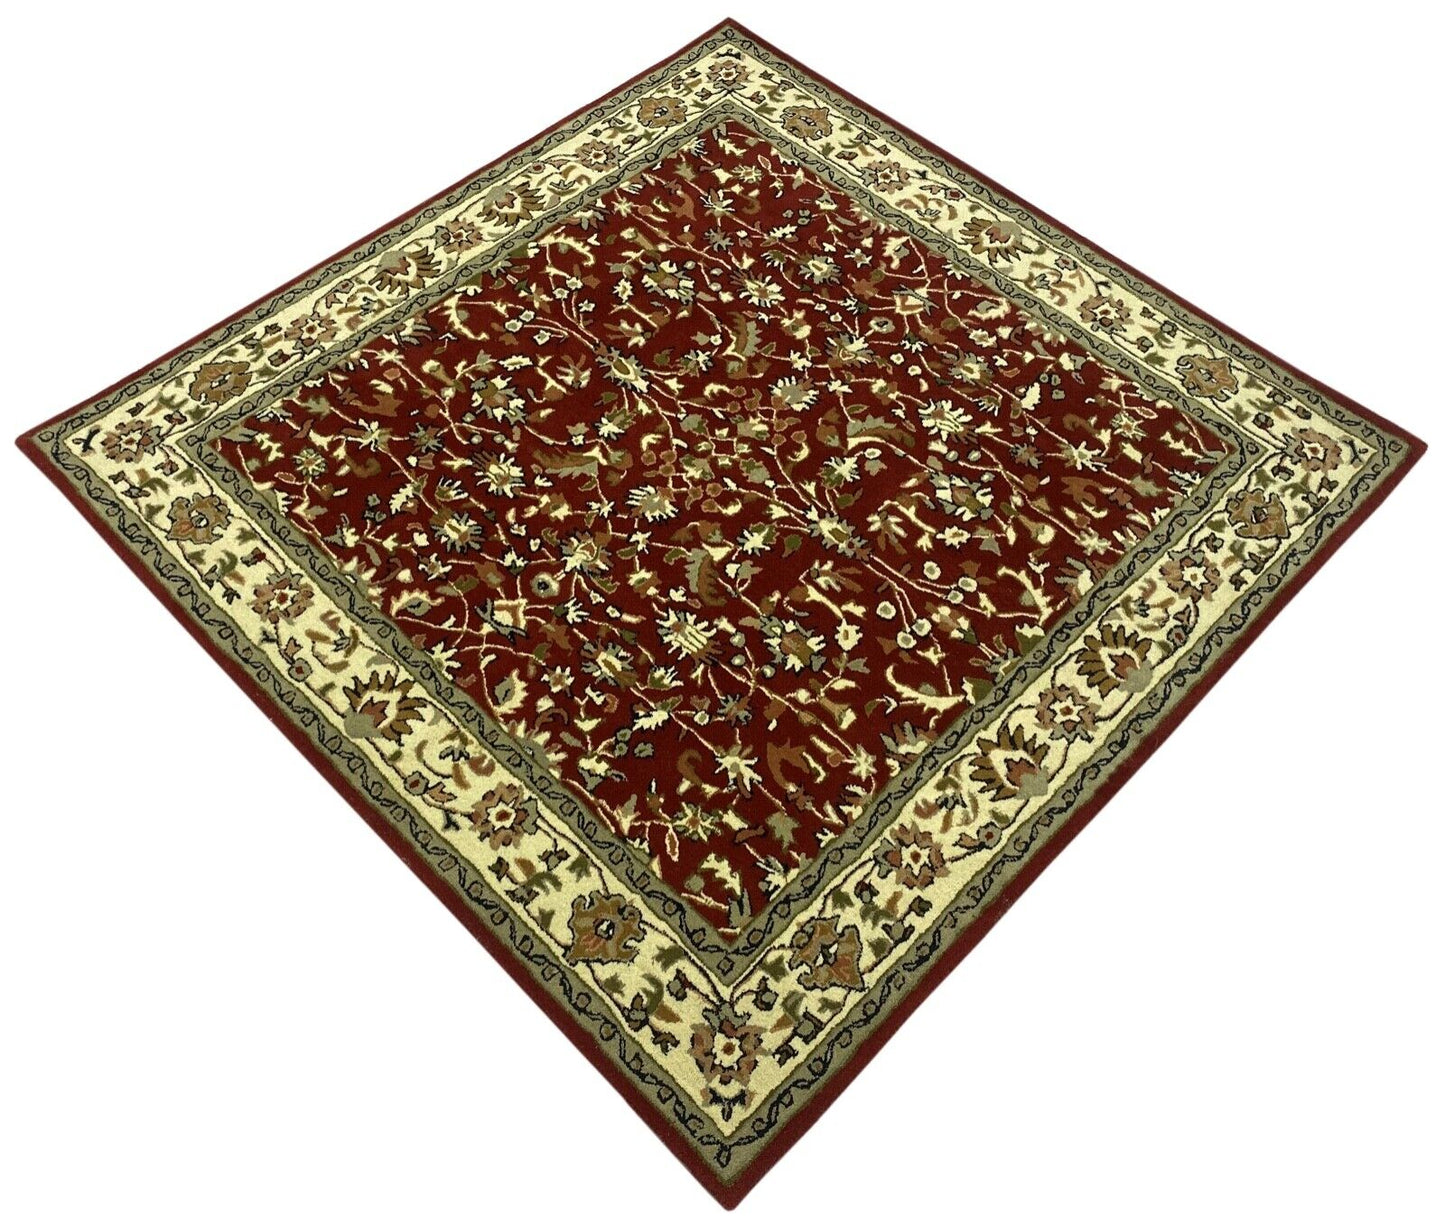 Orientteppich Rot Teppich 100% Wolle Herati Braun Beige Handgetuftet Handgewebt